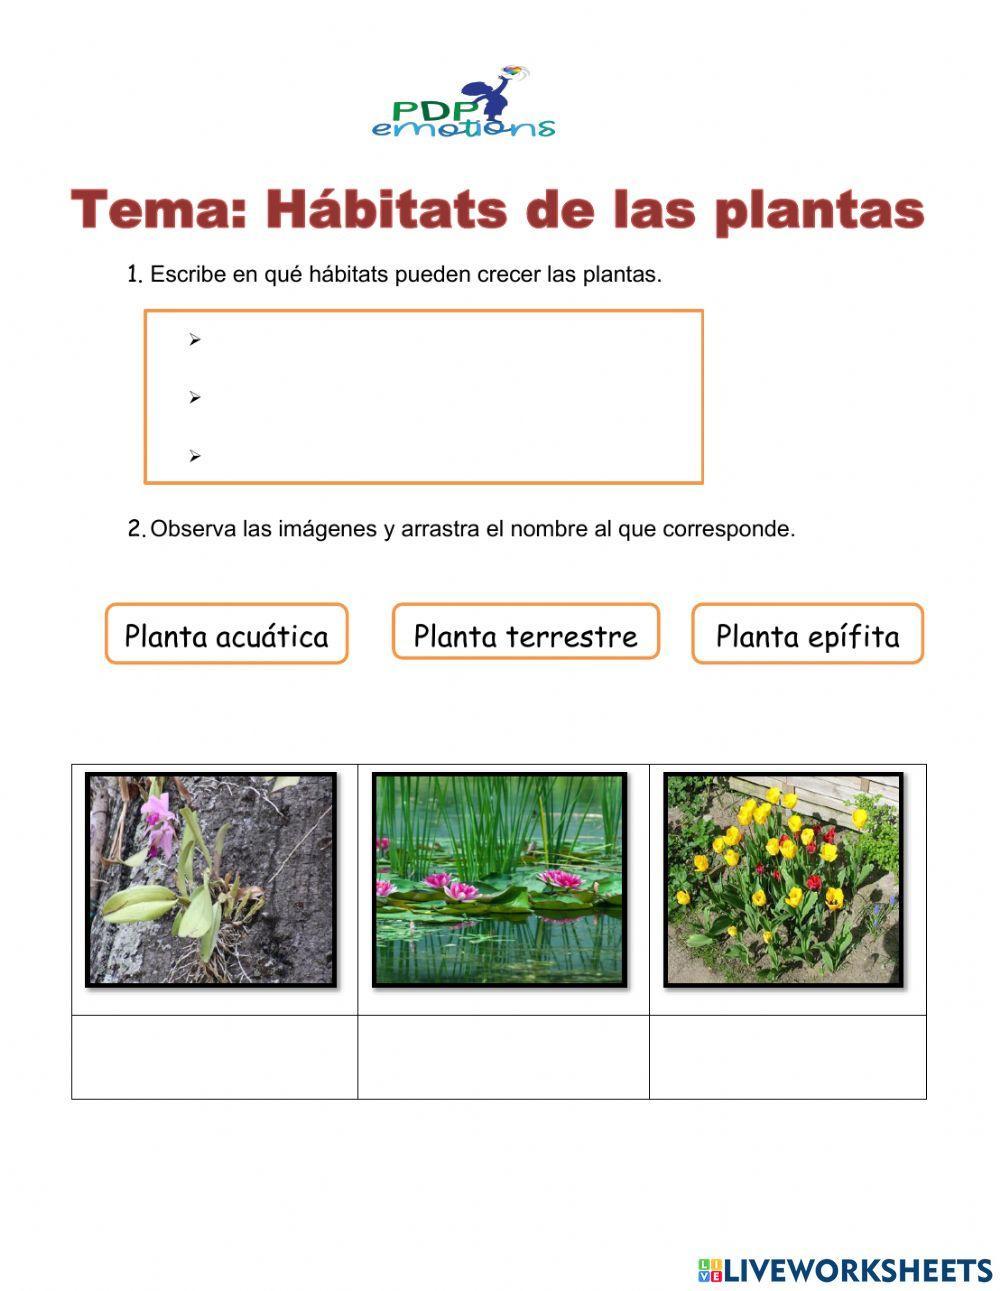 El hábitat de las plantas